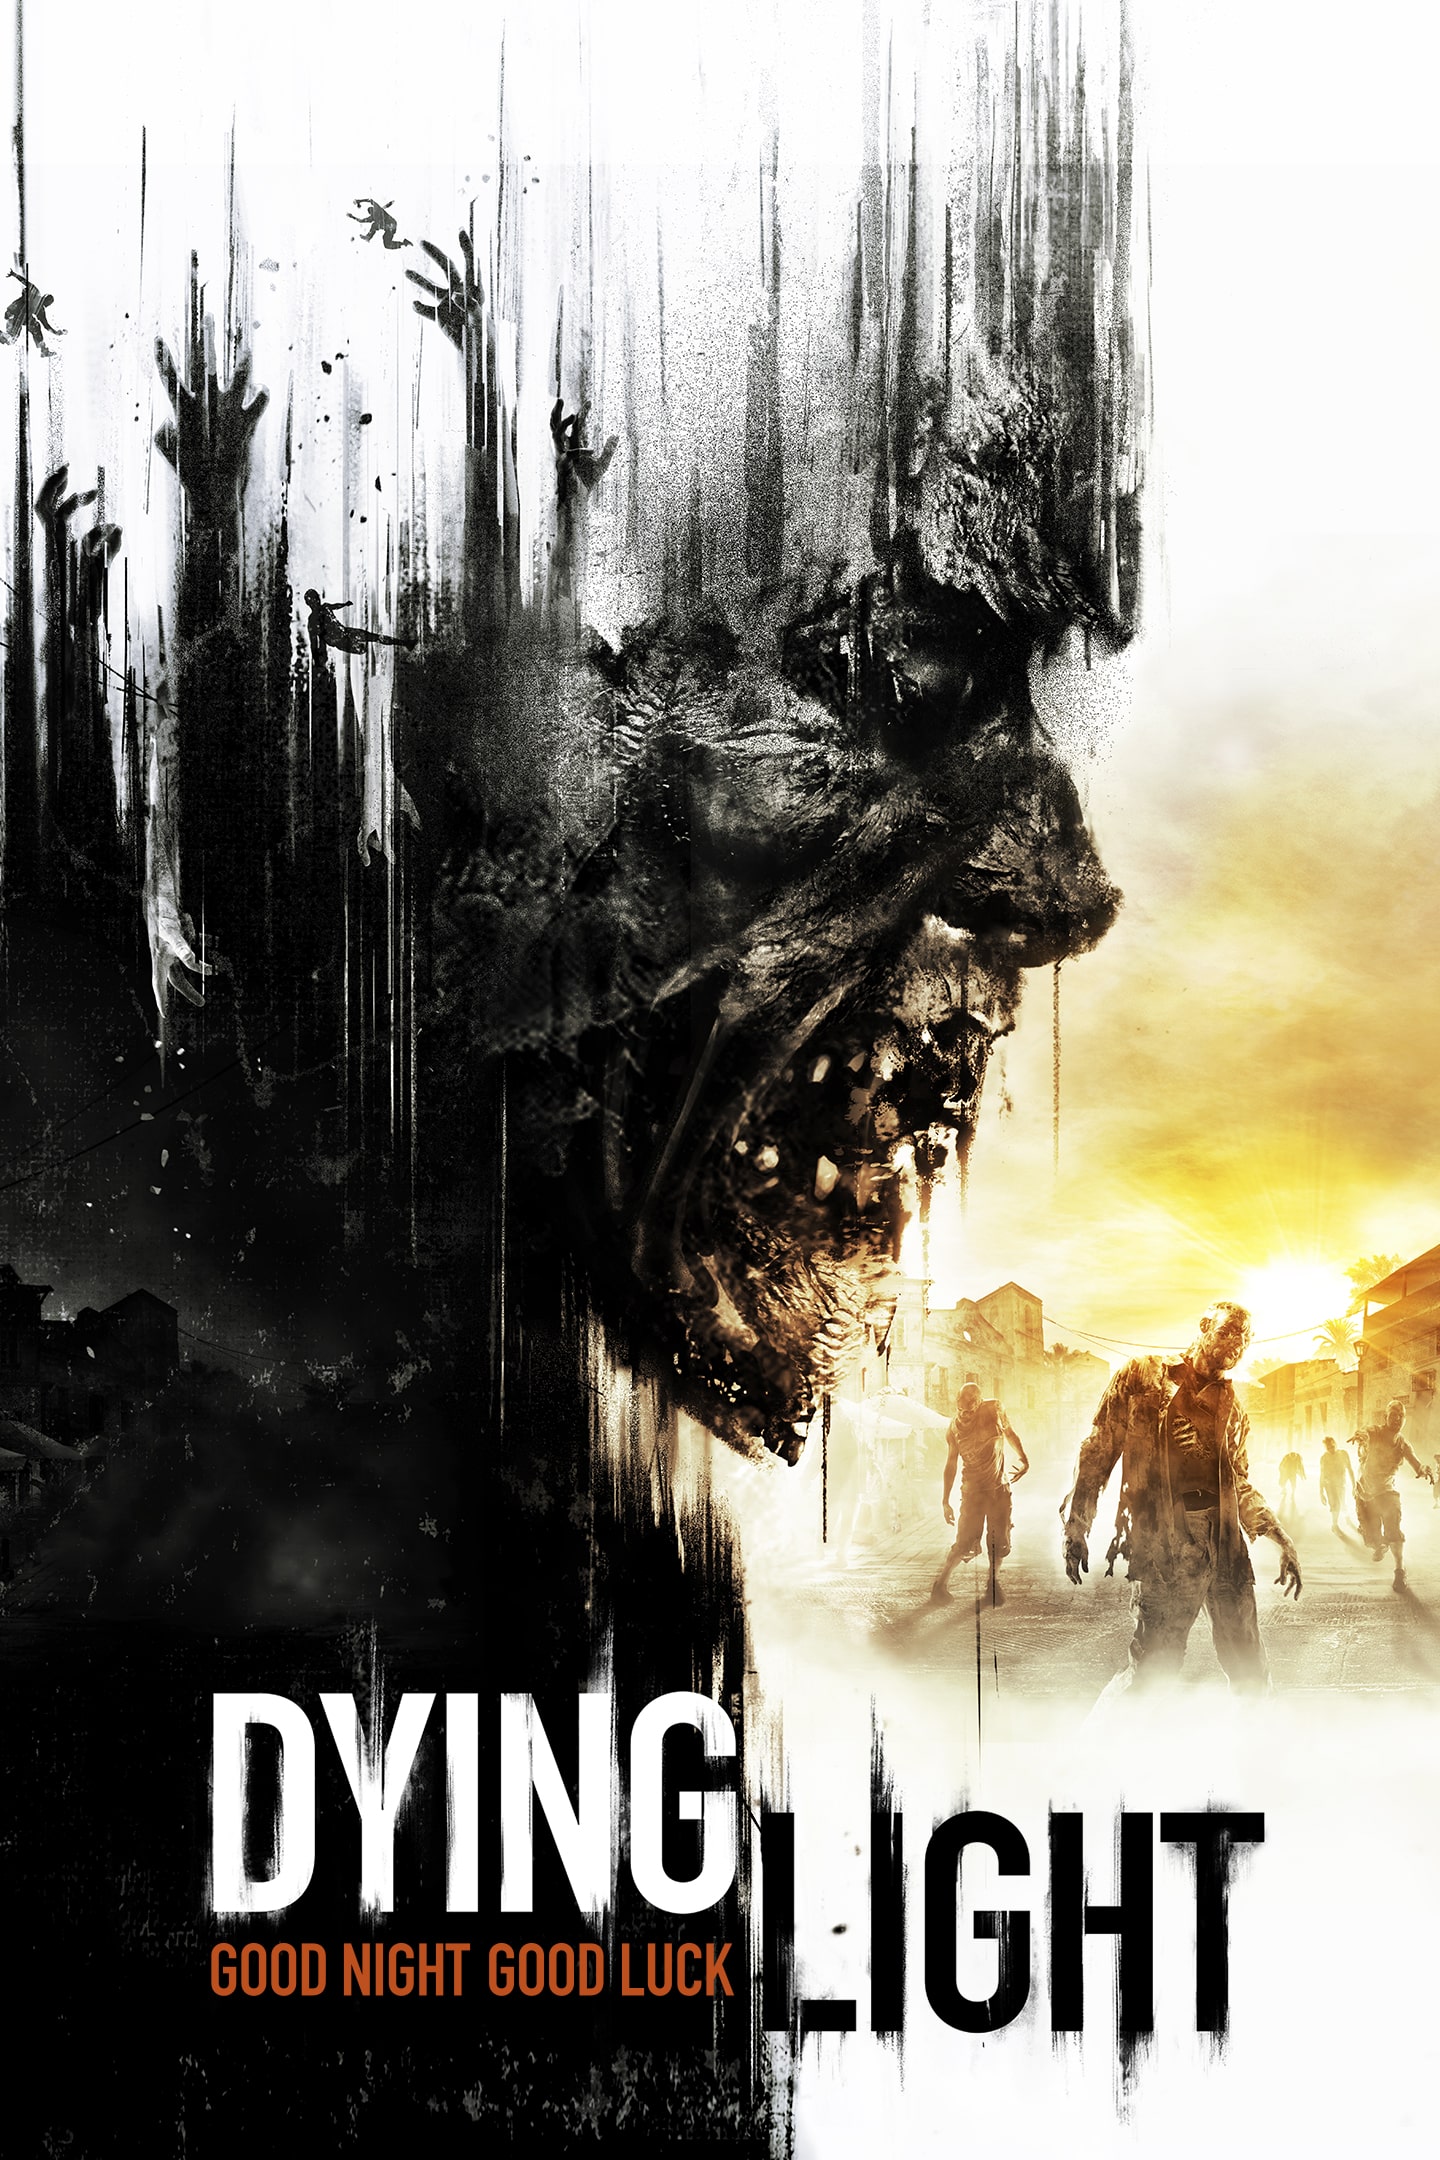 Jogo Dying Light Enhanced Edition para PlayStation 4 WG5298AN na Tudo à Beça